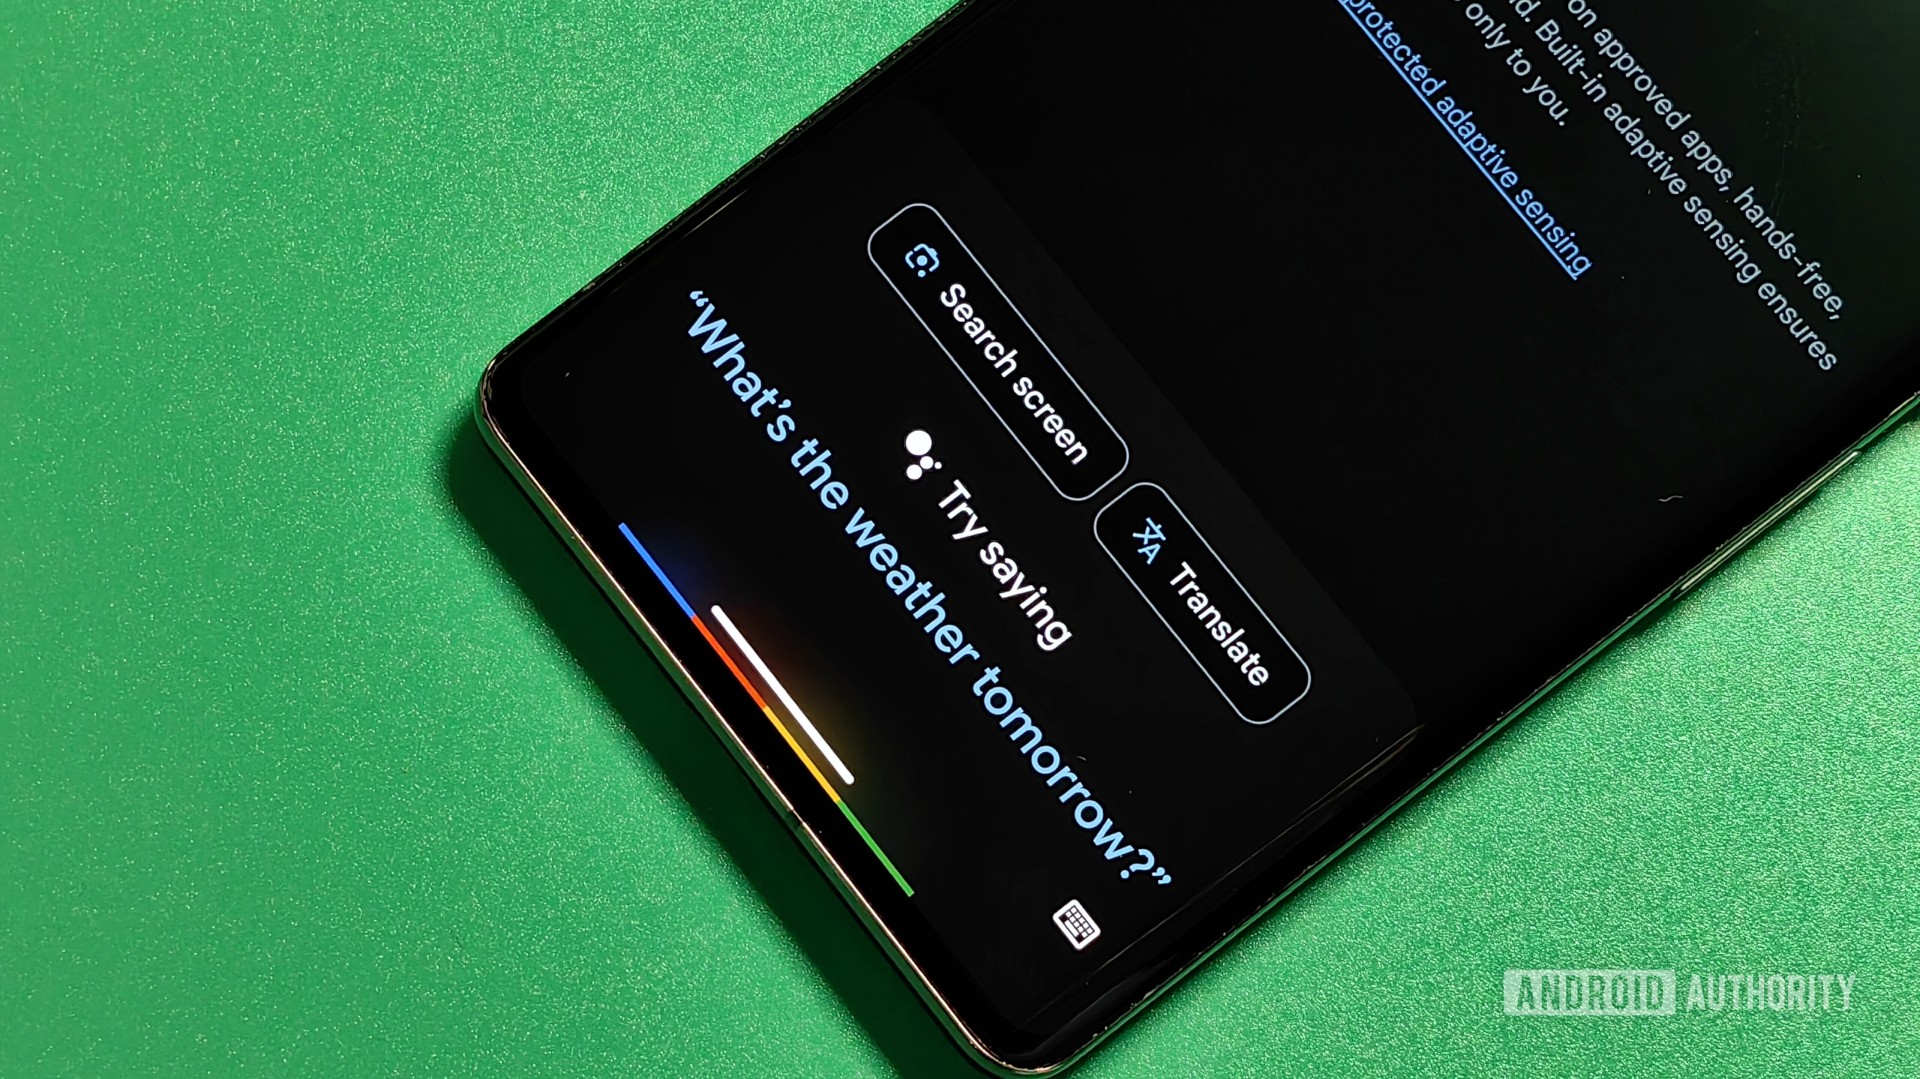 La función de activación por voz de Android 15 podría permitirle iniciar ChatGPT con manos libres